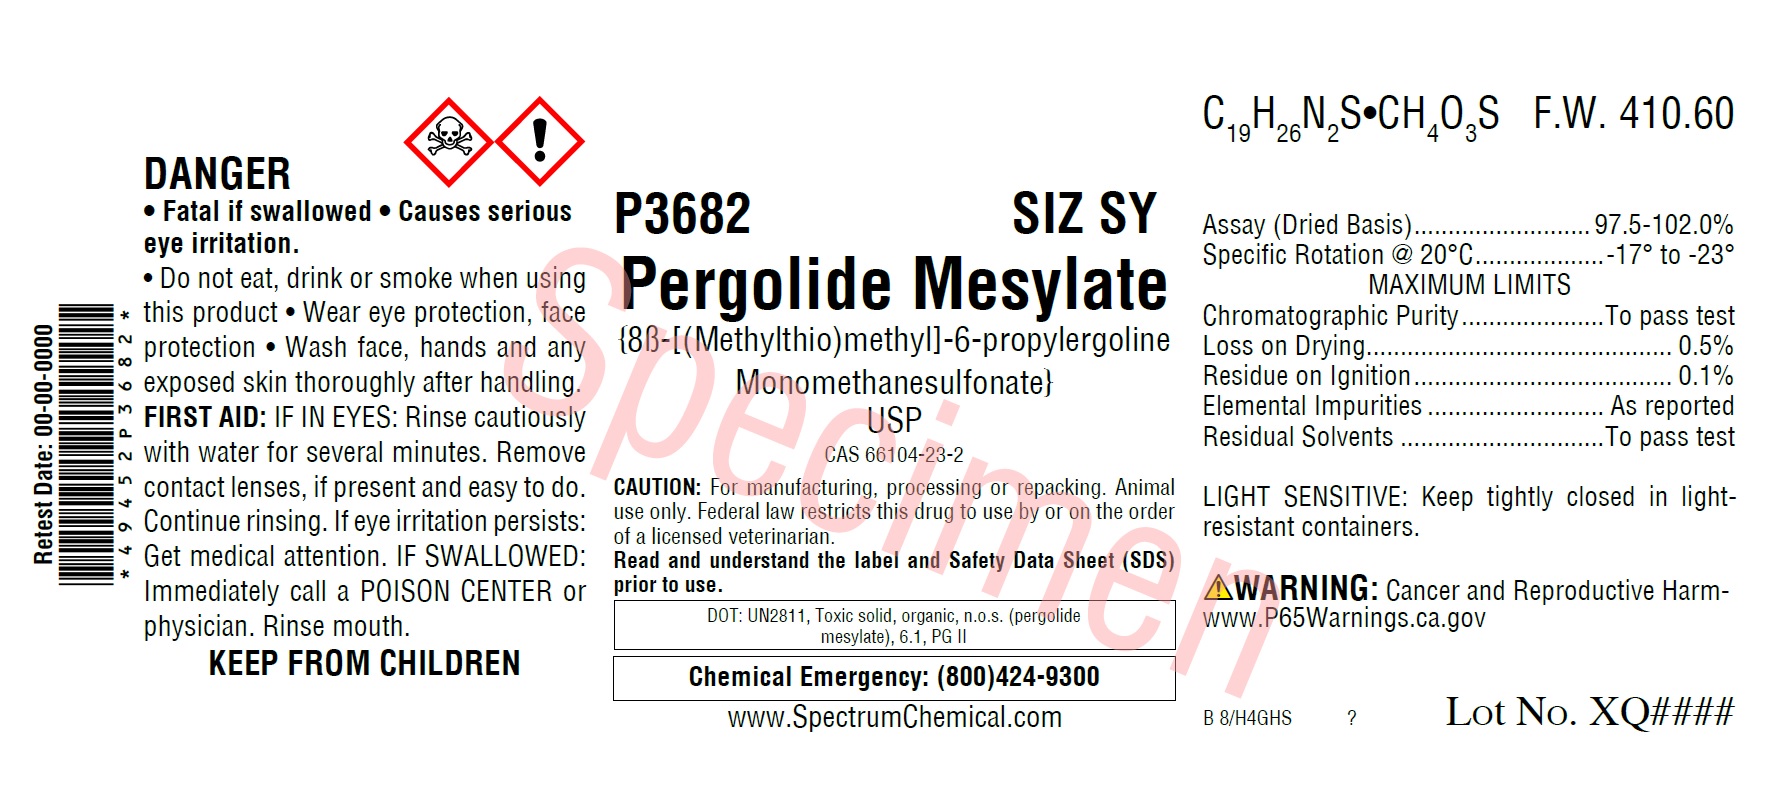 Pergolide Mesylate